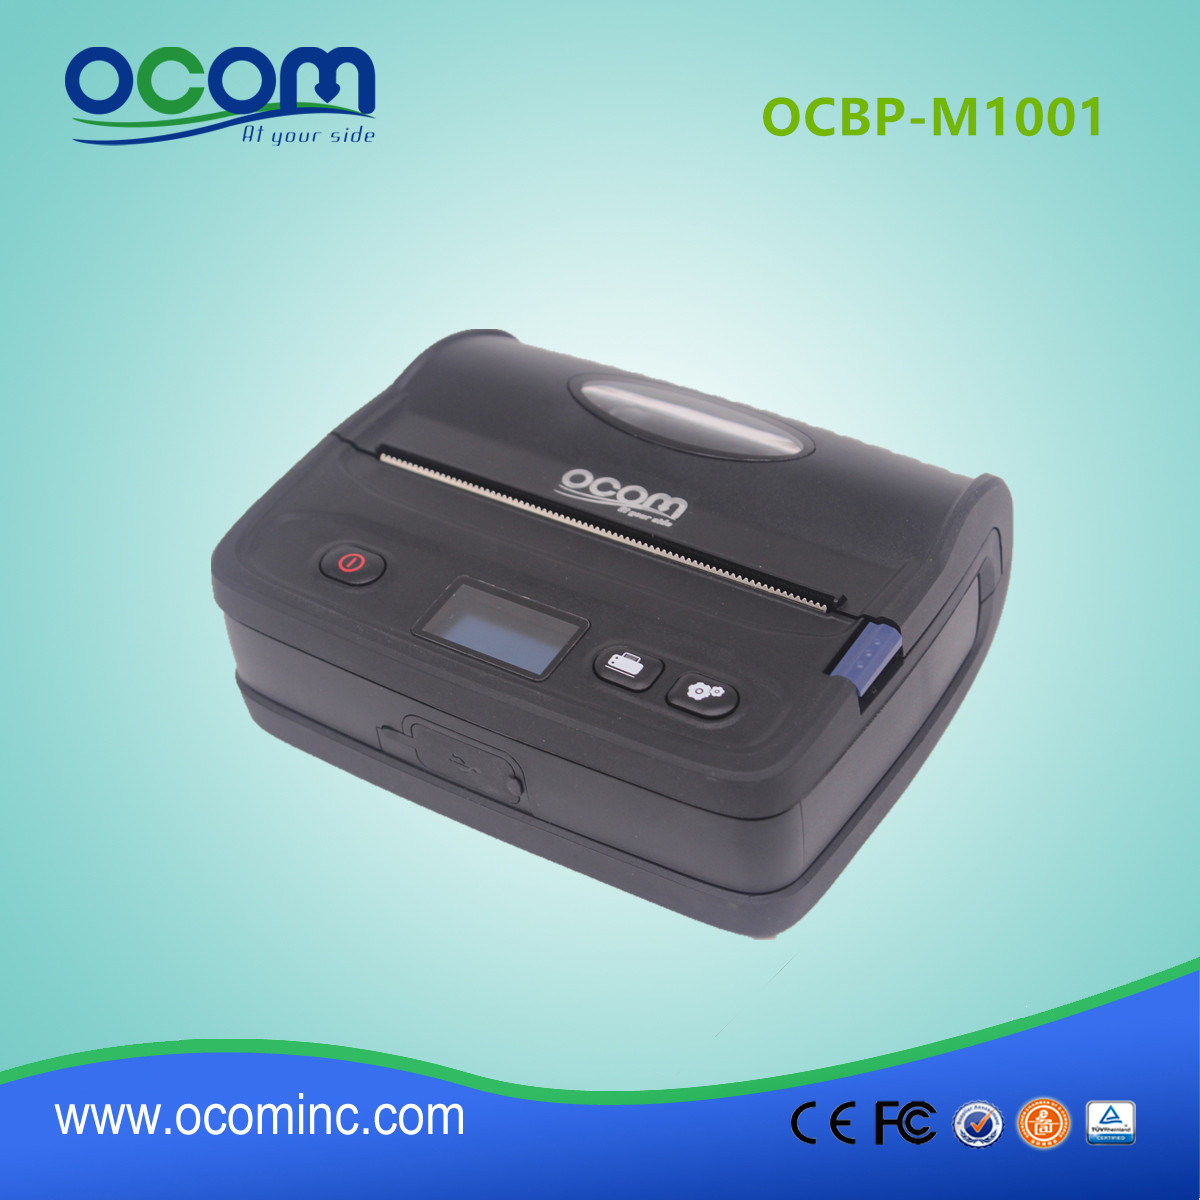 OCBP-M1001 4inches Bluetooth мобильный прямой термодатчик принтер